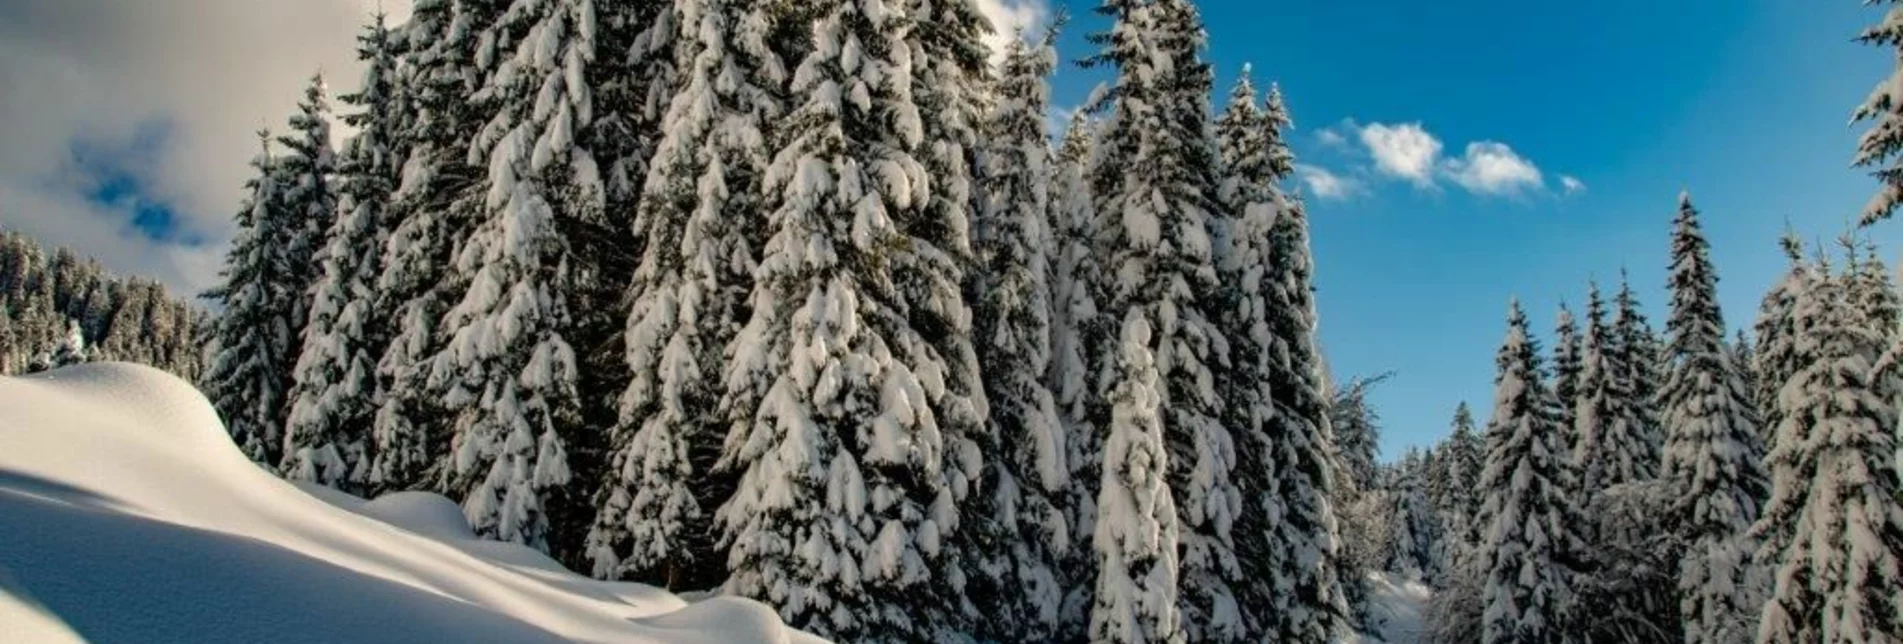 Snowshoe walking Übereckrunde Johnsbach - Touren-Impression #1 | © TV Gesäuse